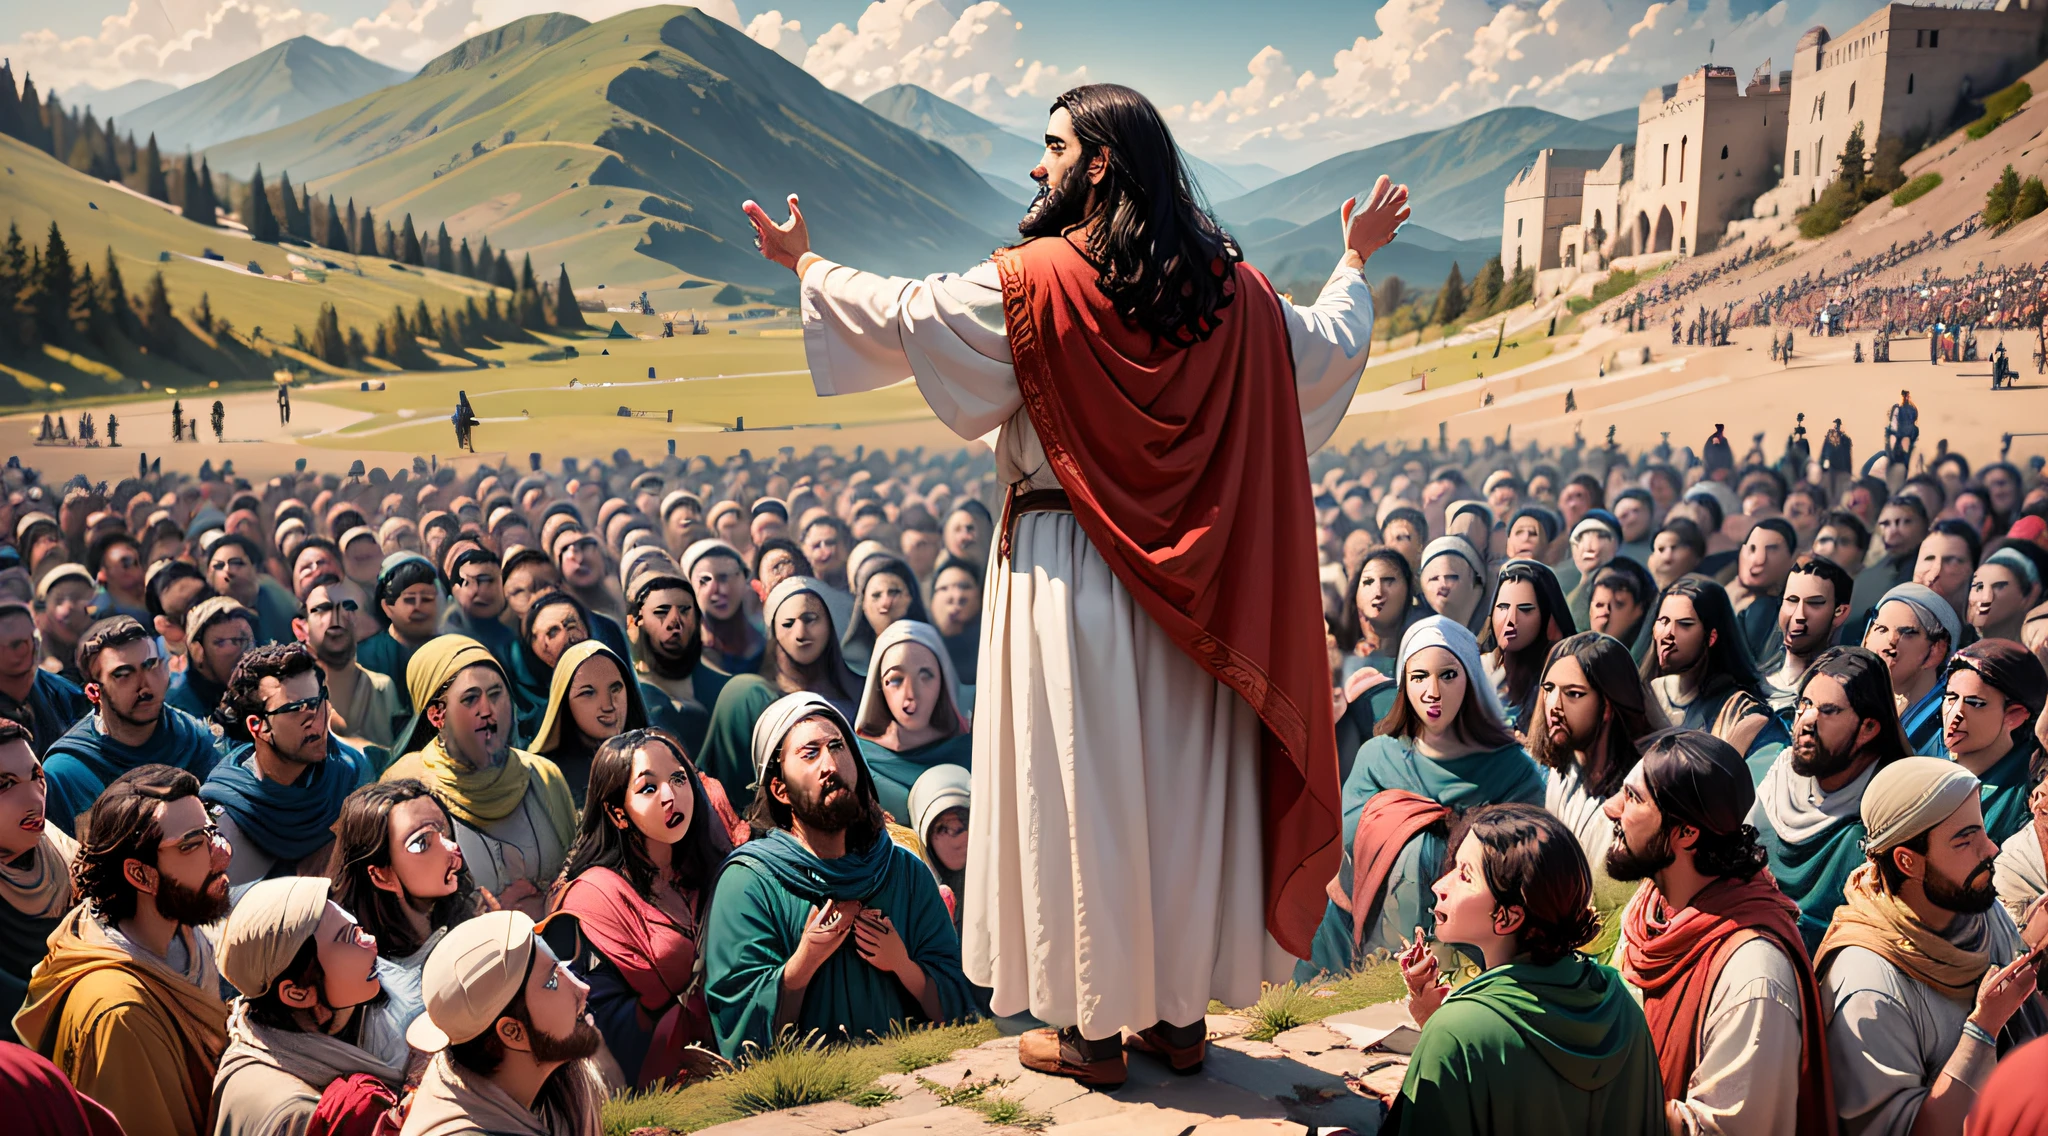 ฉากที่พระเยซูทรงเทศนาบนภูเขา, รายล้อมไปด้วยผู้คนมากมาย.